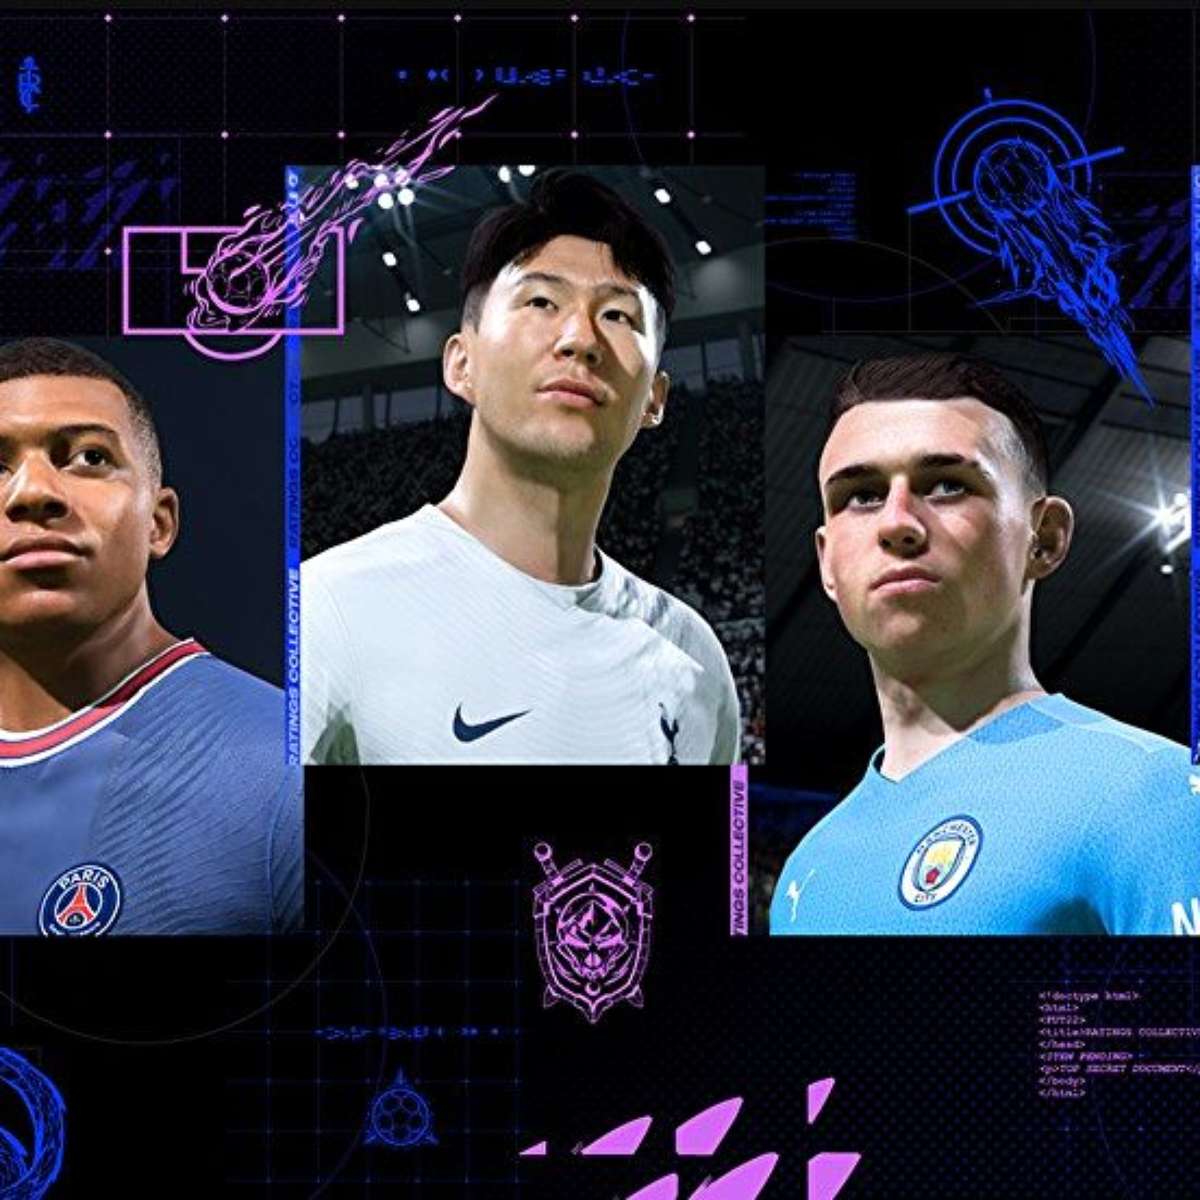 FIFA 22: Melhores jogadores para montar equipa competitiva no FUT